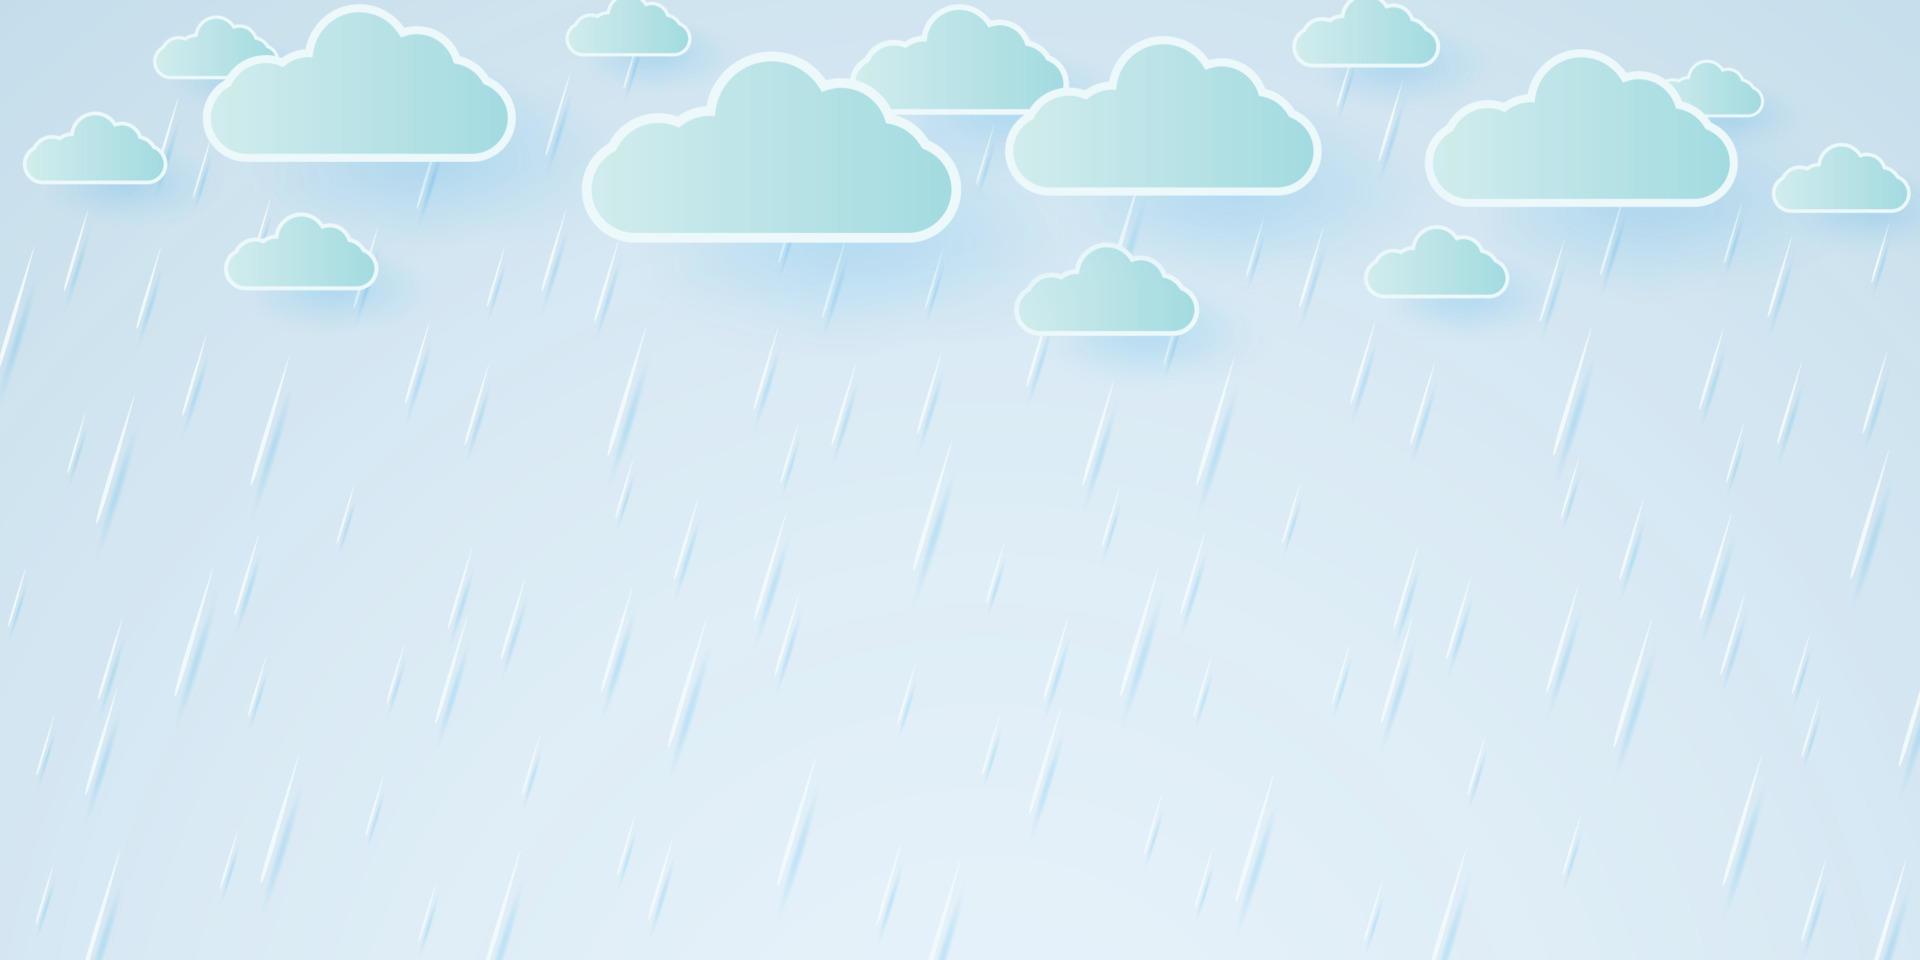 vektor illustration, regnskur, regn bakgrund, regnperiod, papper konst stil